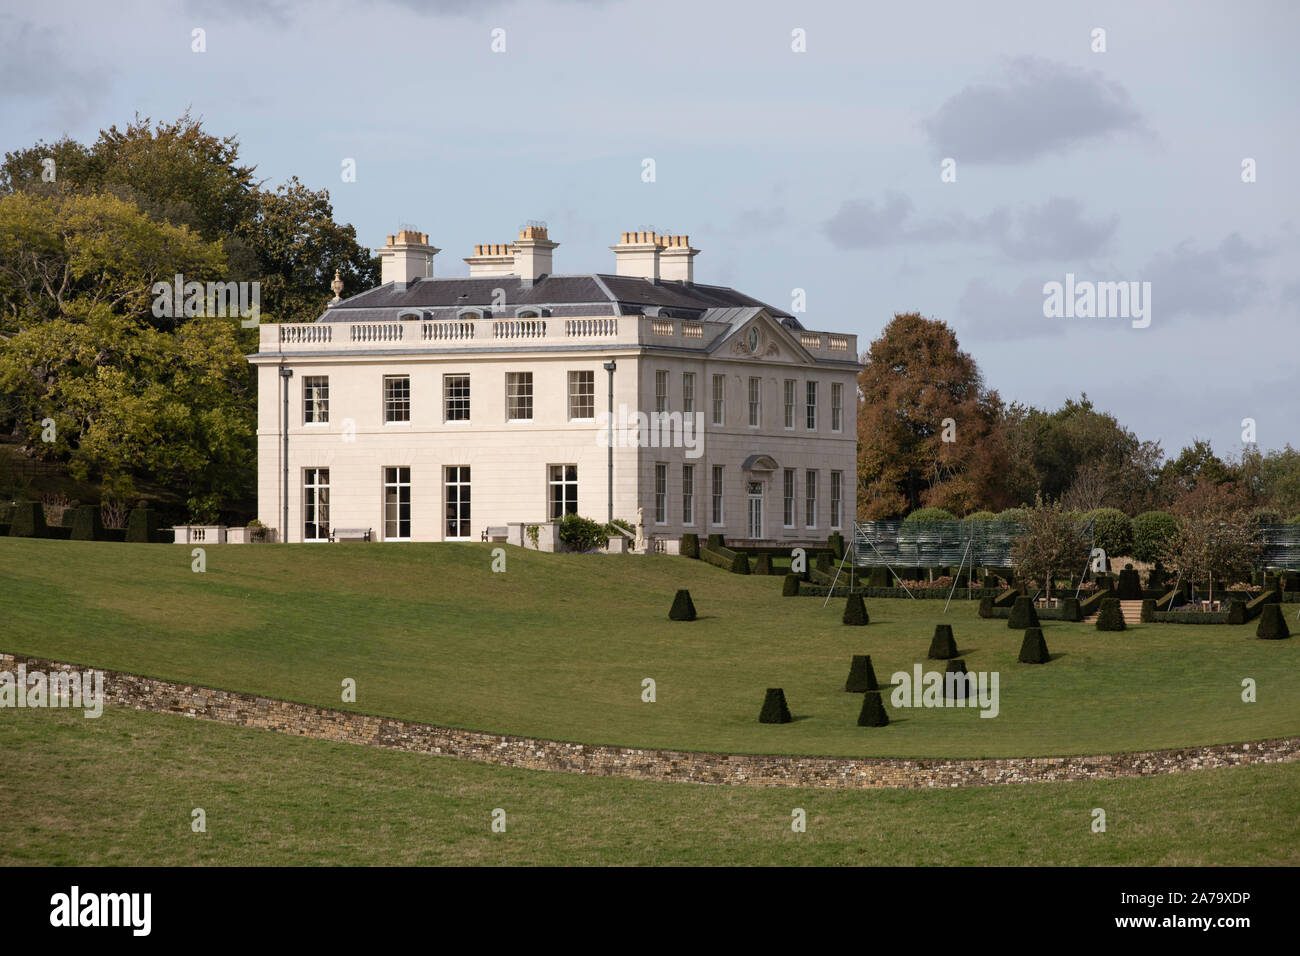 Pitshill Haus, Haus aus dem 18. Jahrhundert von den Damen und Herren Karl Pearson und seine Frau Lila, Tillington, Petworth, West Sussex, Großbritannien Besitz Stockfoto